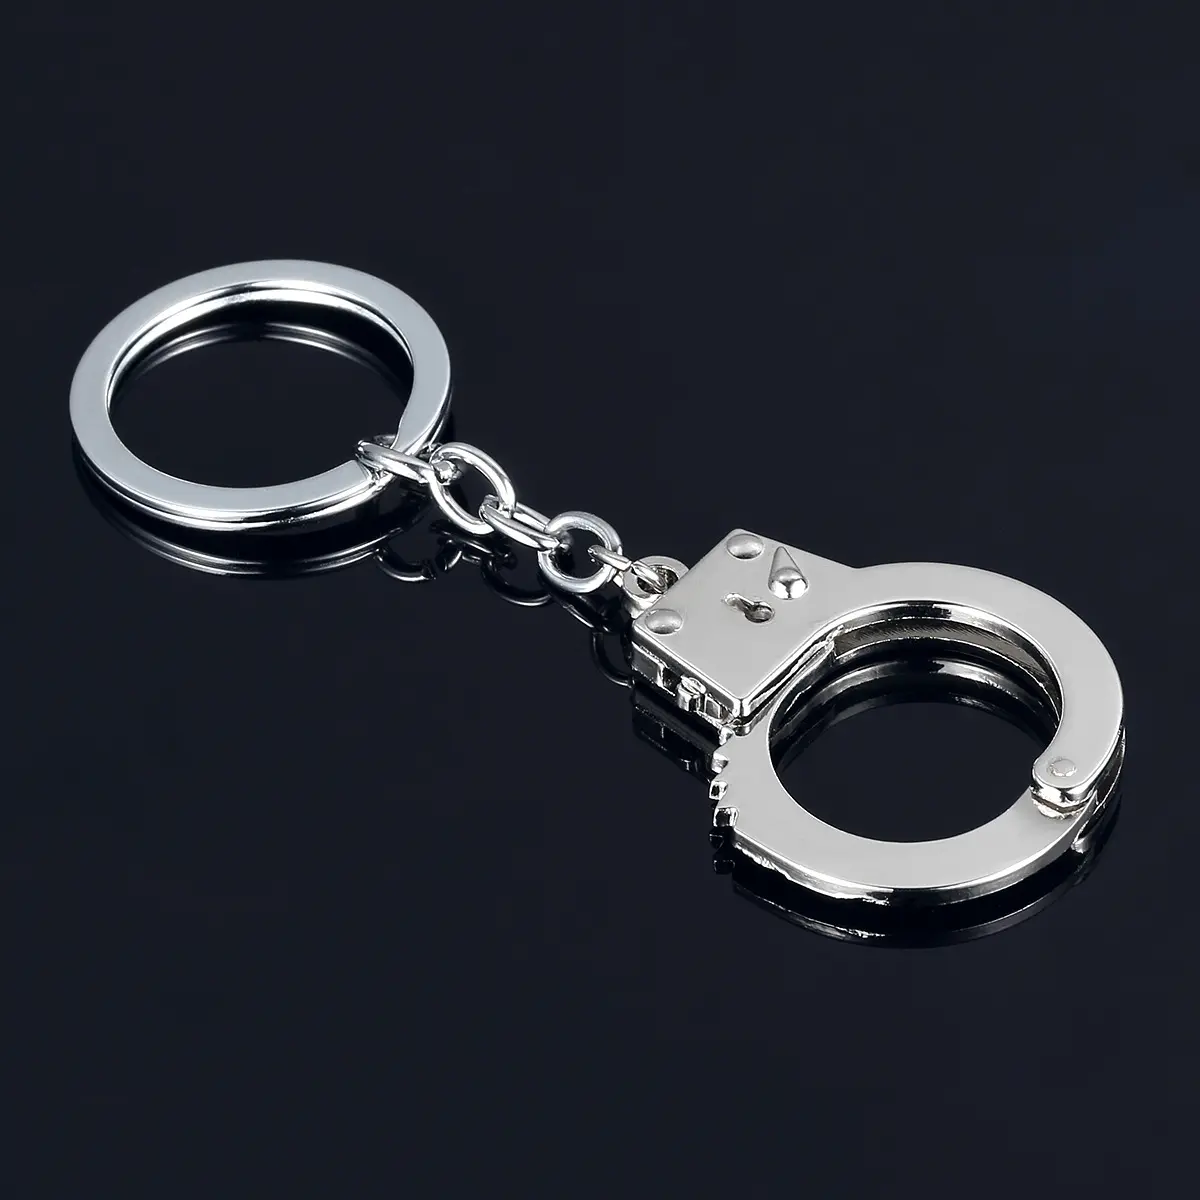 उच्च गुणवत्ता वाली कुंजी चरस धातु सिक्का धारक मिनी सिमुलेशन पुलिस स्मारिका के लिए हैंडकुफ कीचेन